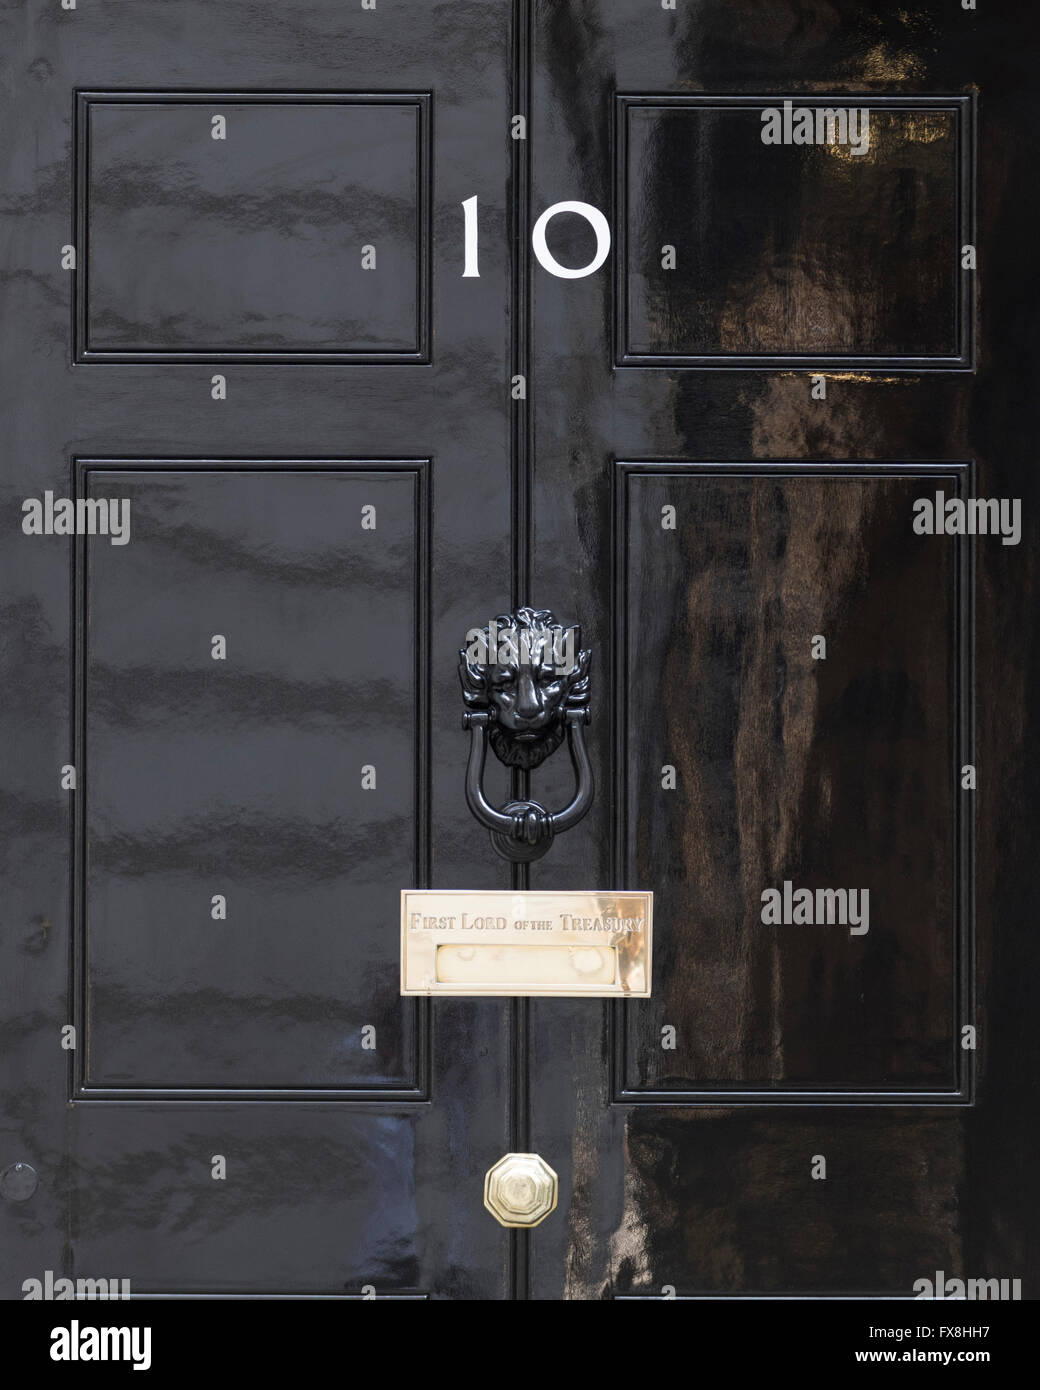 El número 10 de Downing Street es un edificio del gobierno del Reino Unido y es la residencia oficial del Primer Ministro británico. Foto de stock